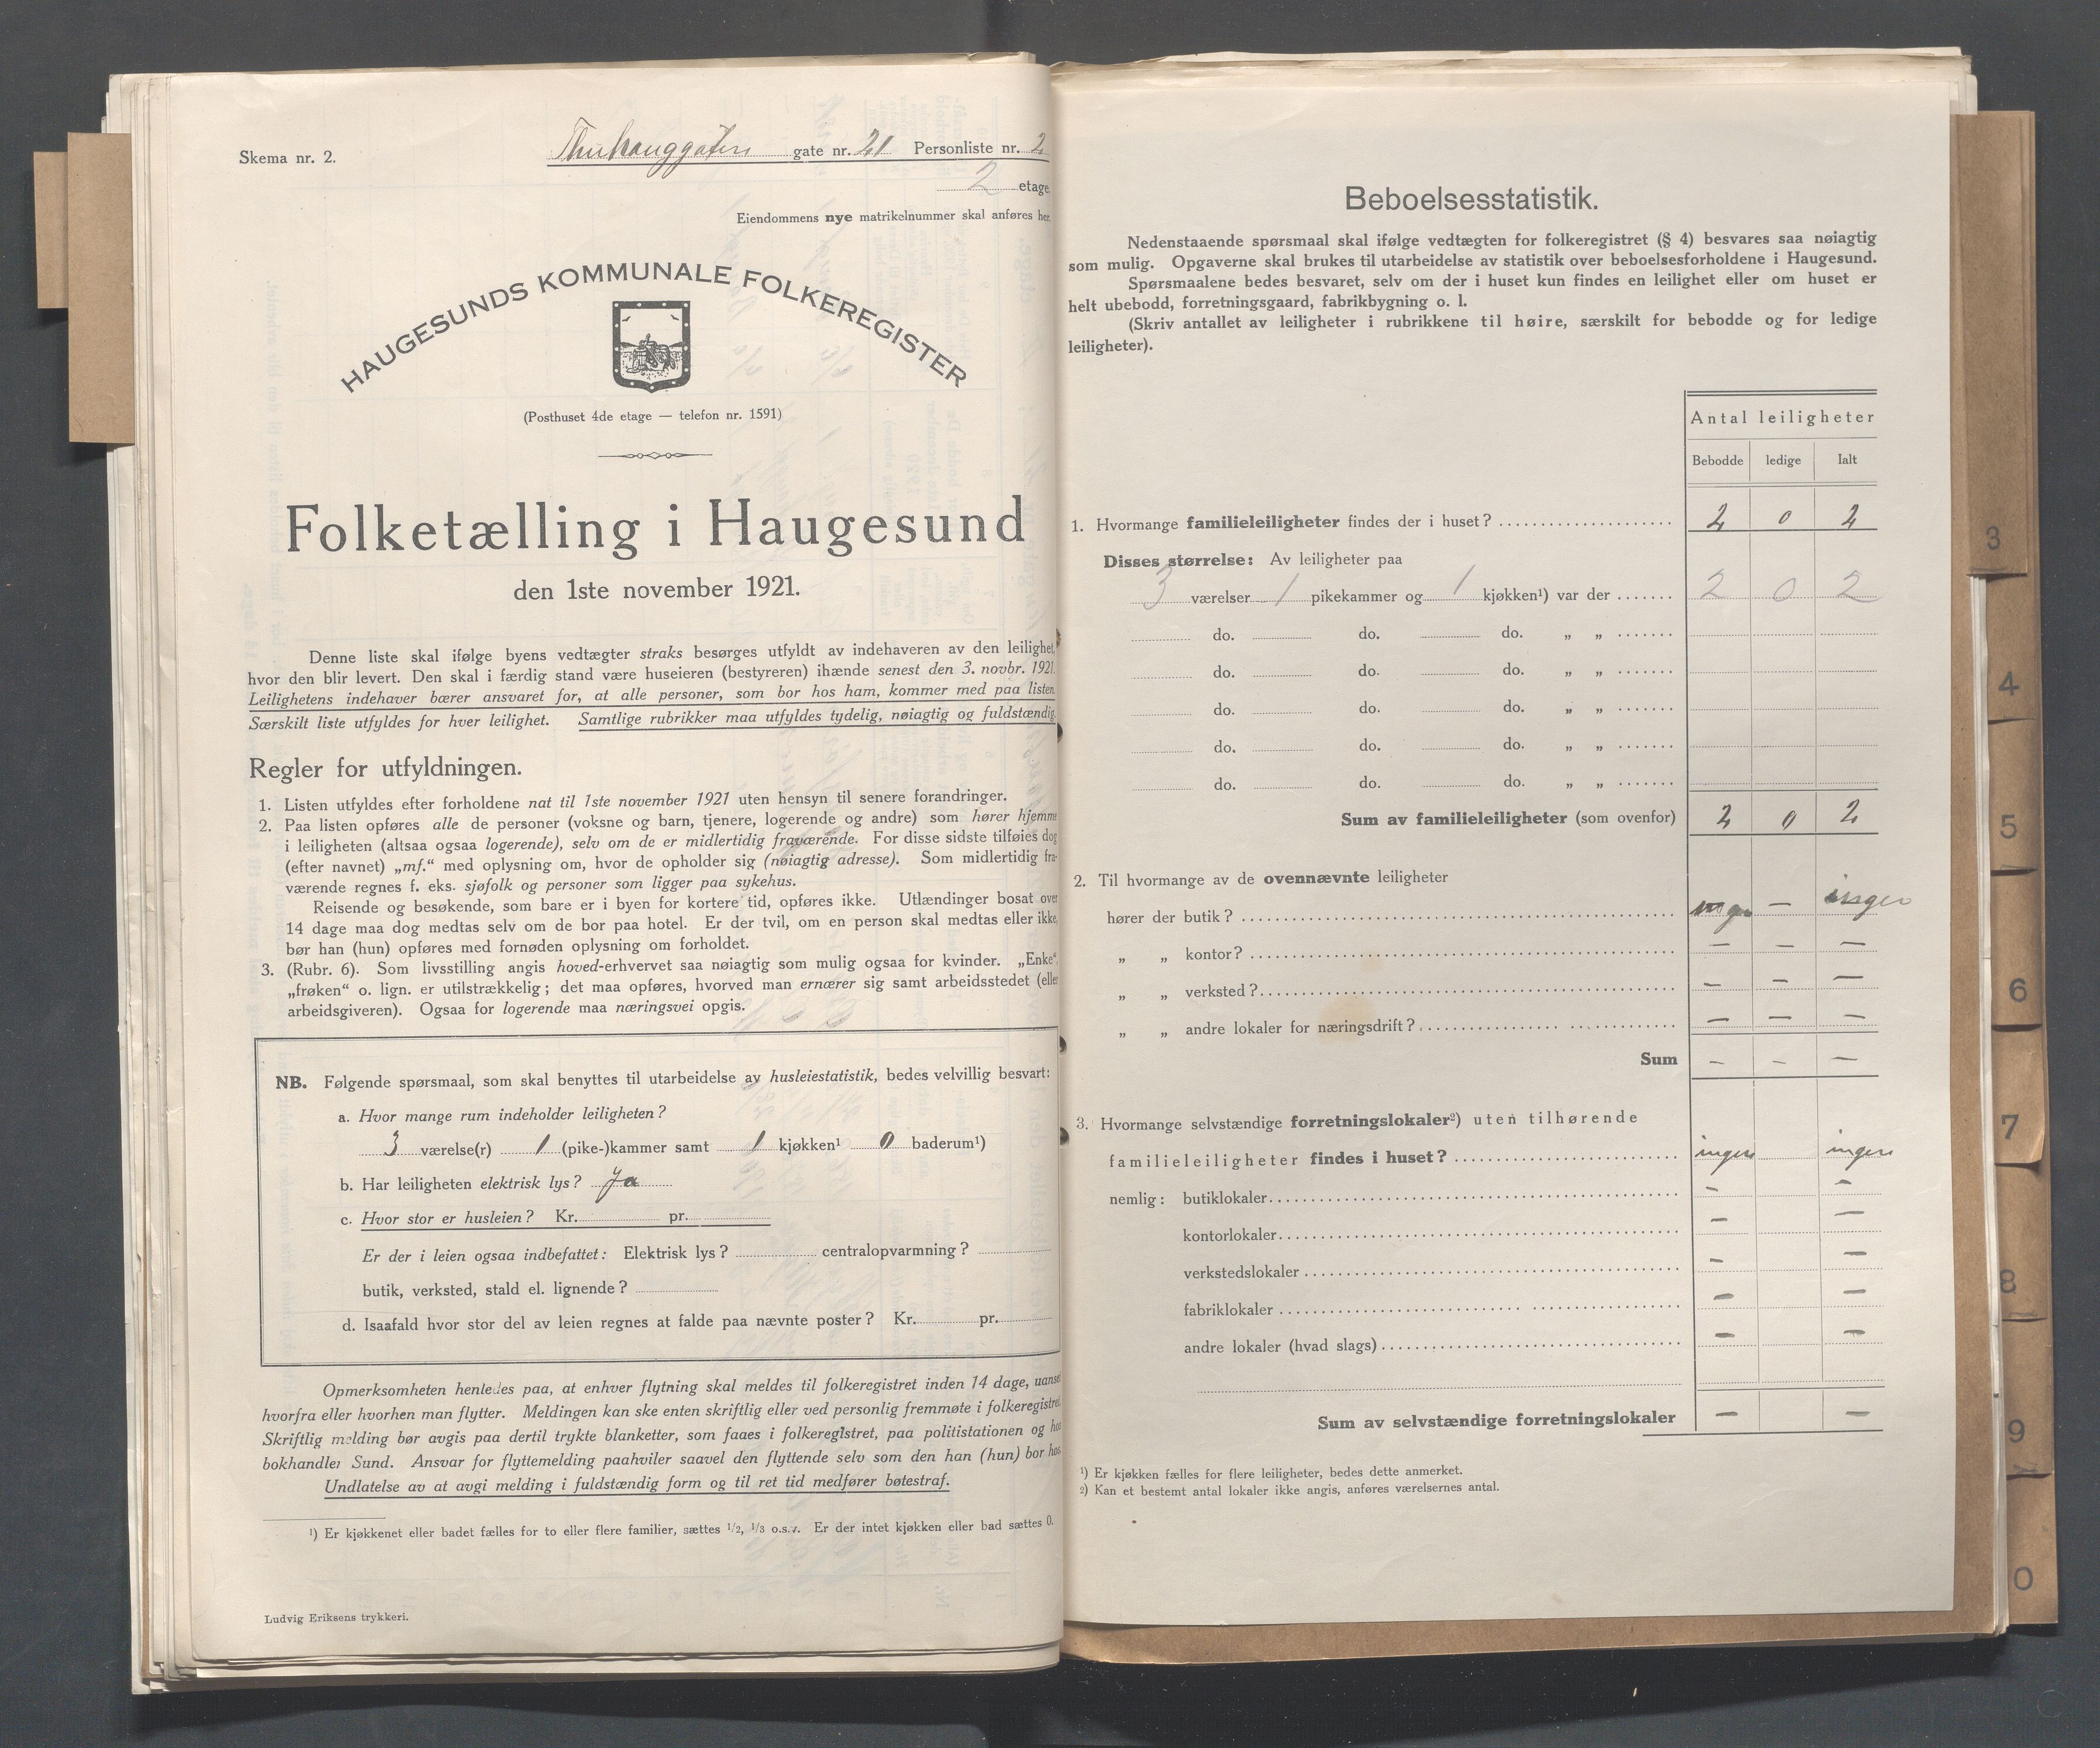 IKAR, Local census 1.11.1921 for Haugesund, 1921, p. 5435